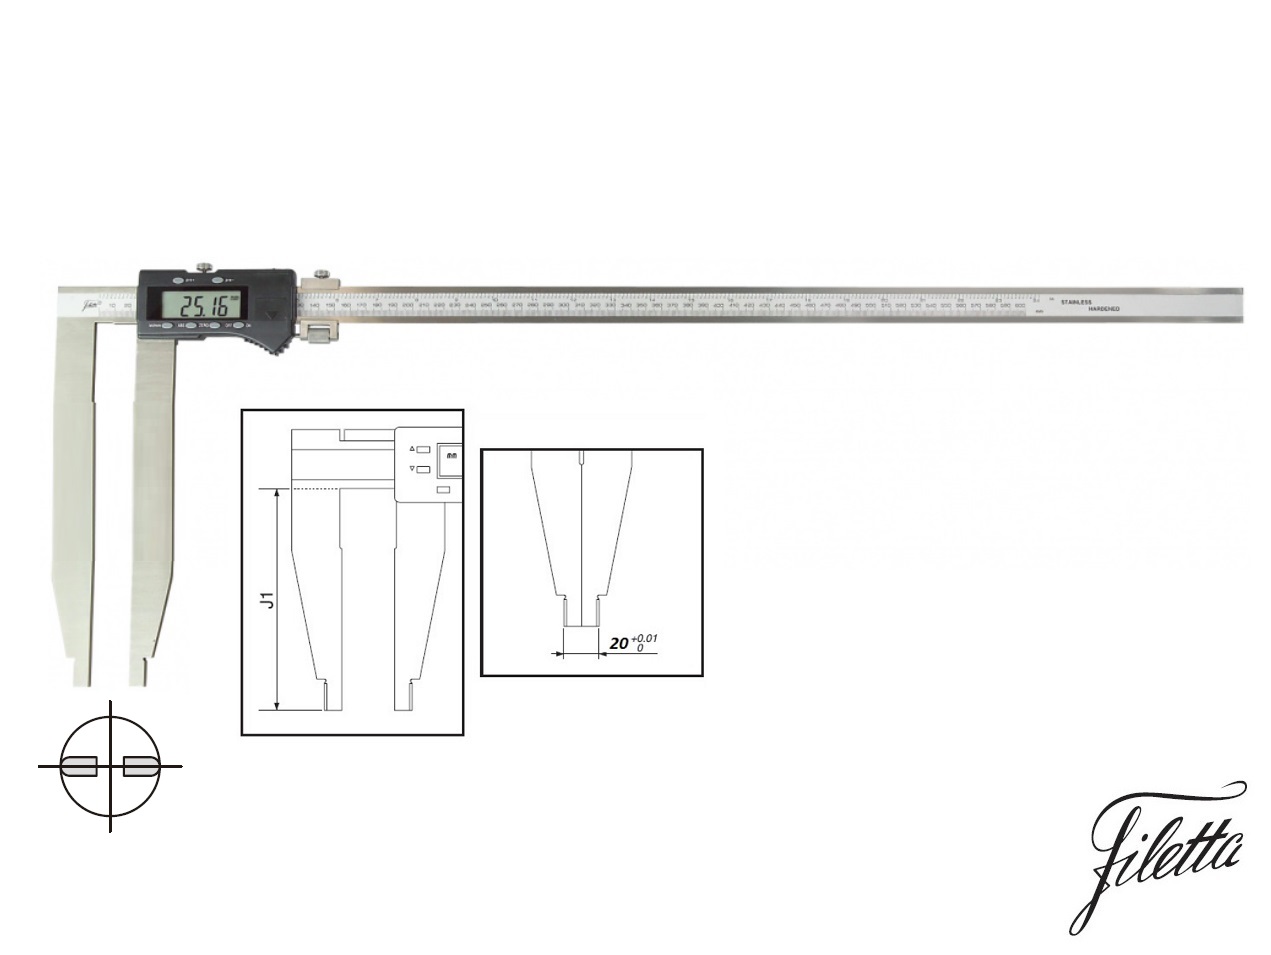 Digitální posuvné měřítko Filetta 0-600 mm  bez nožíků, s měřicími čelistmi 200 mm